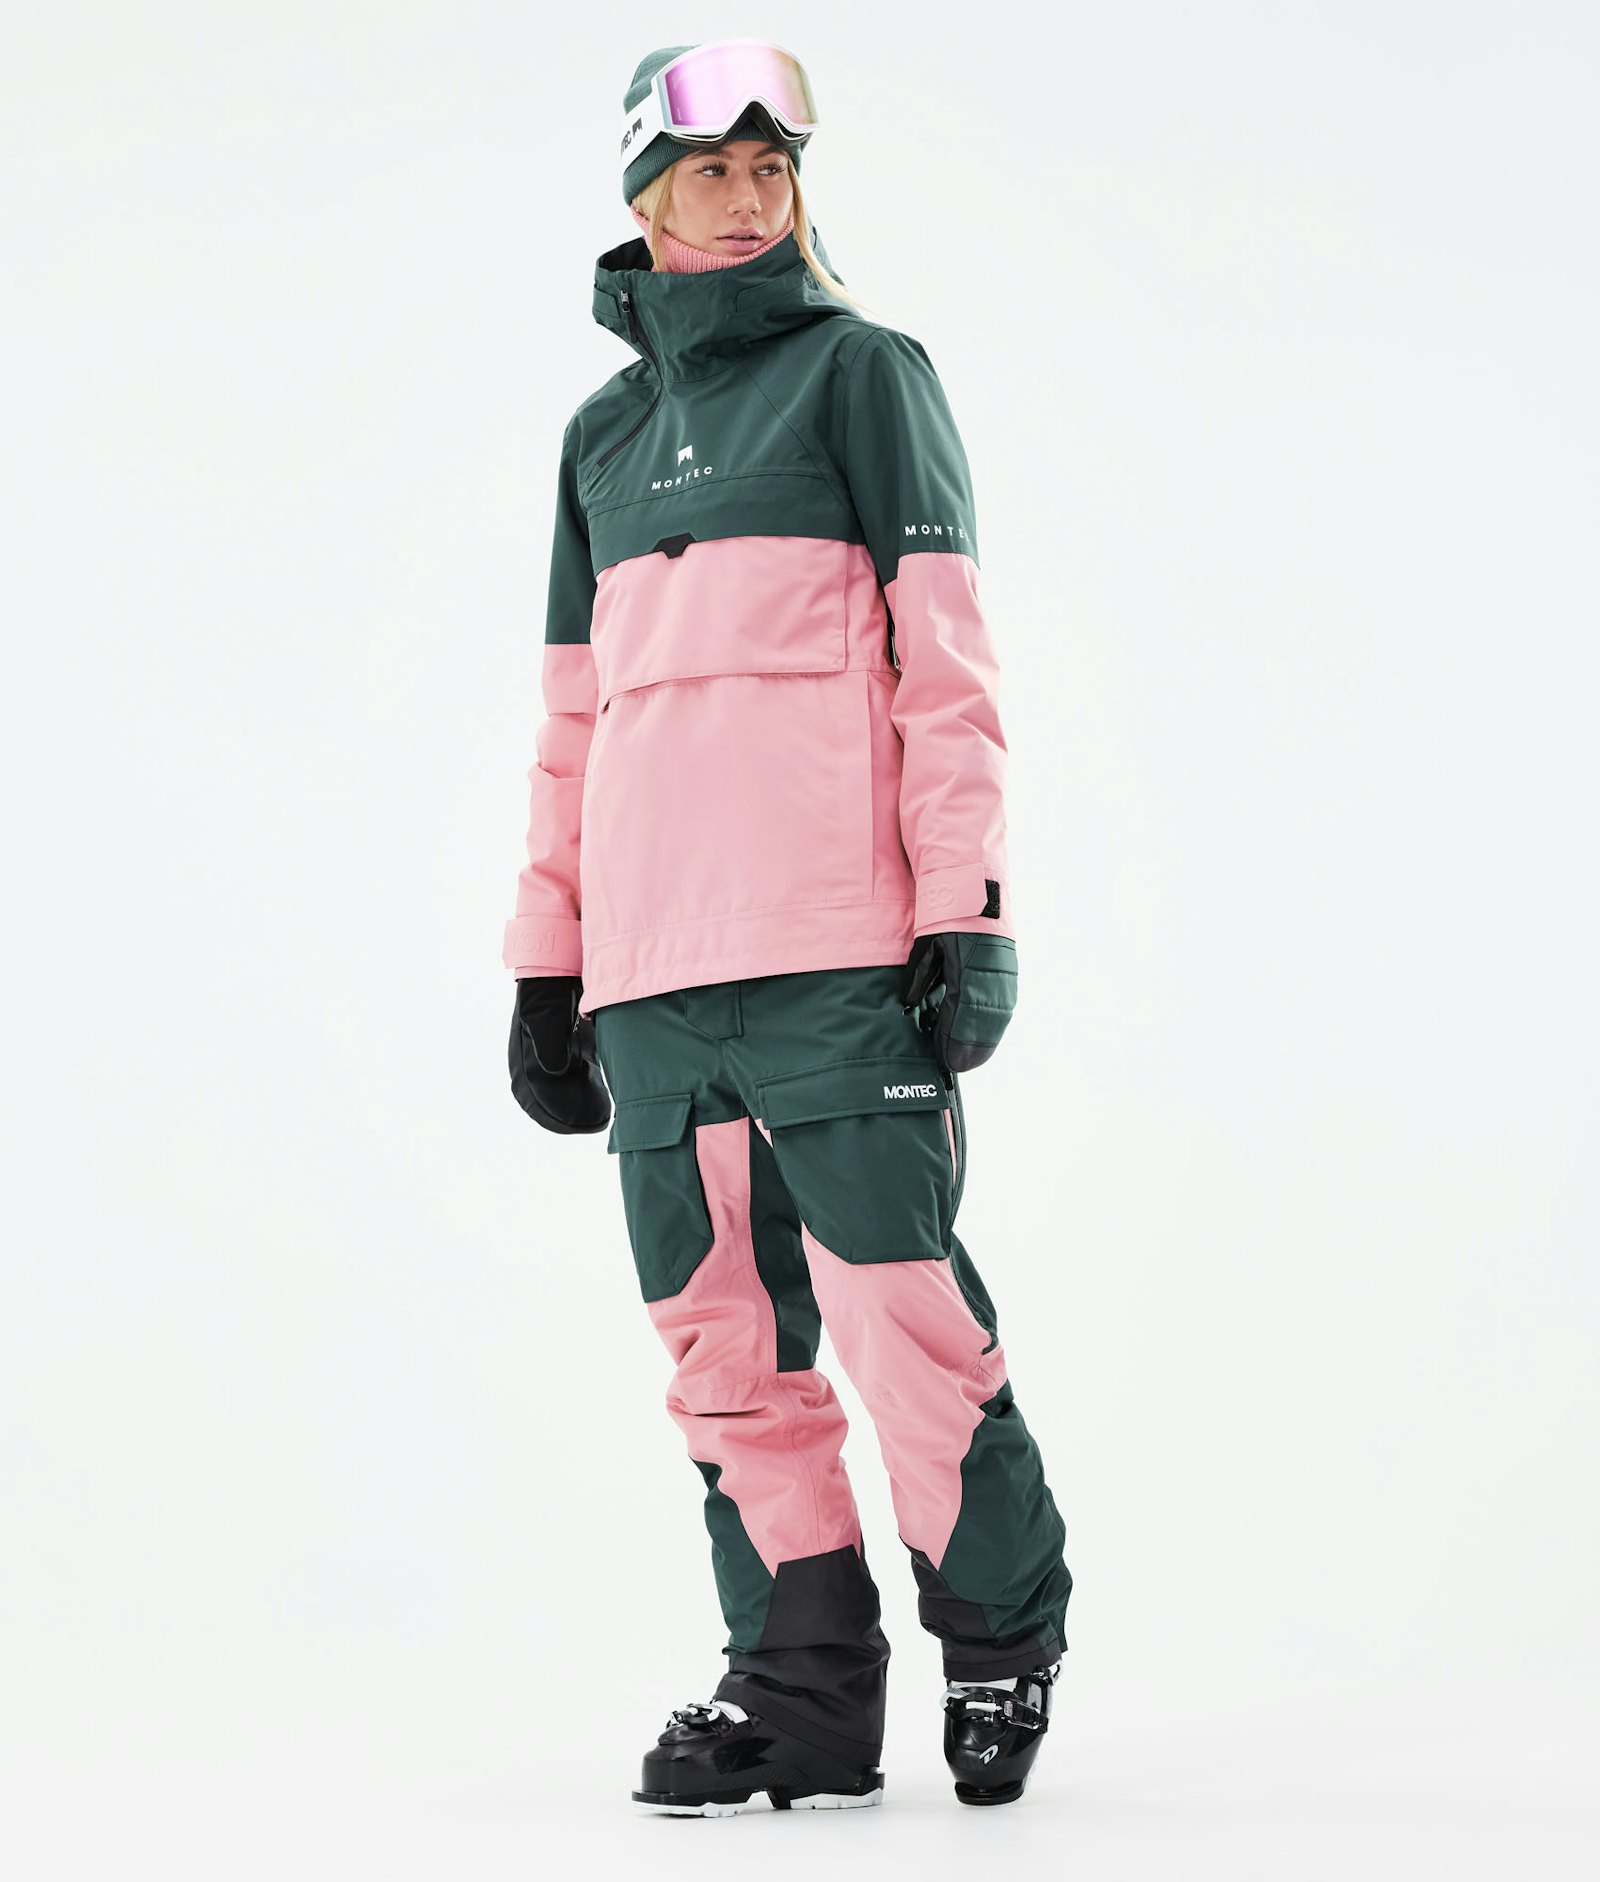 Montec Doom W 2021 Veste de Ski Femme Dark Atlantic/Pink/Light